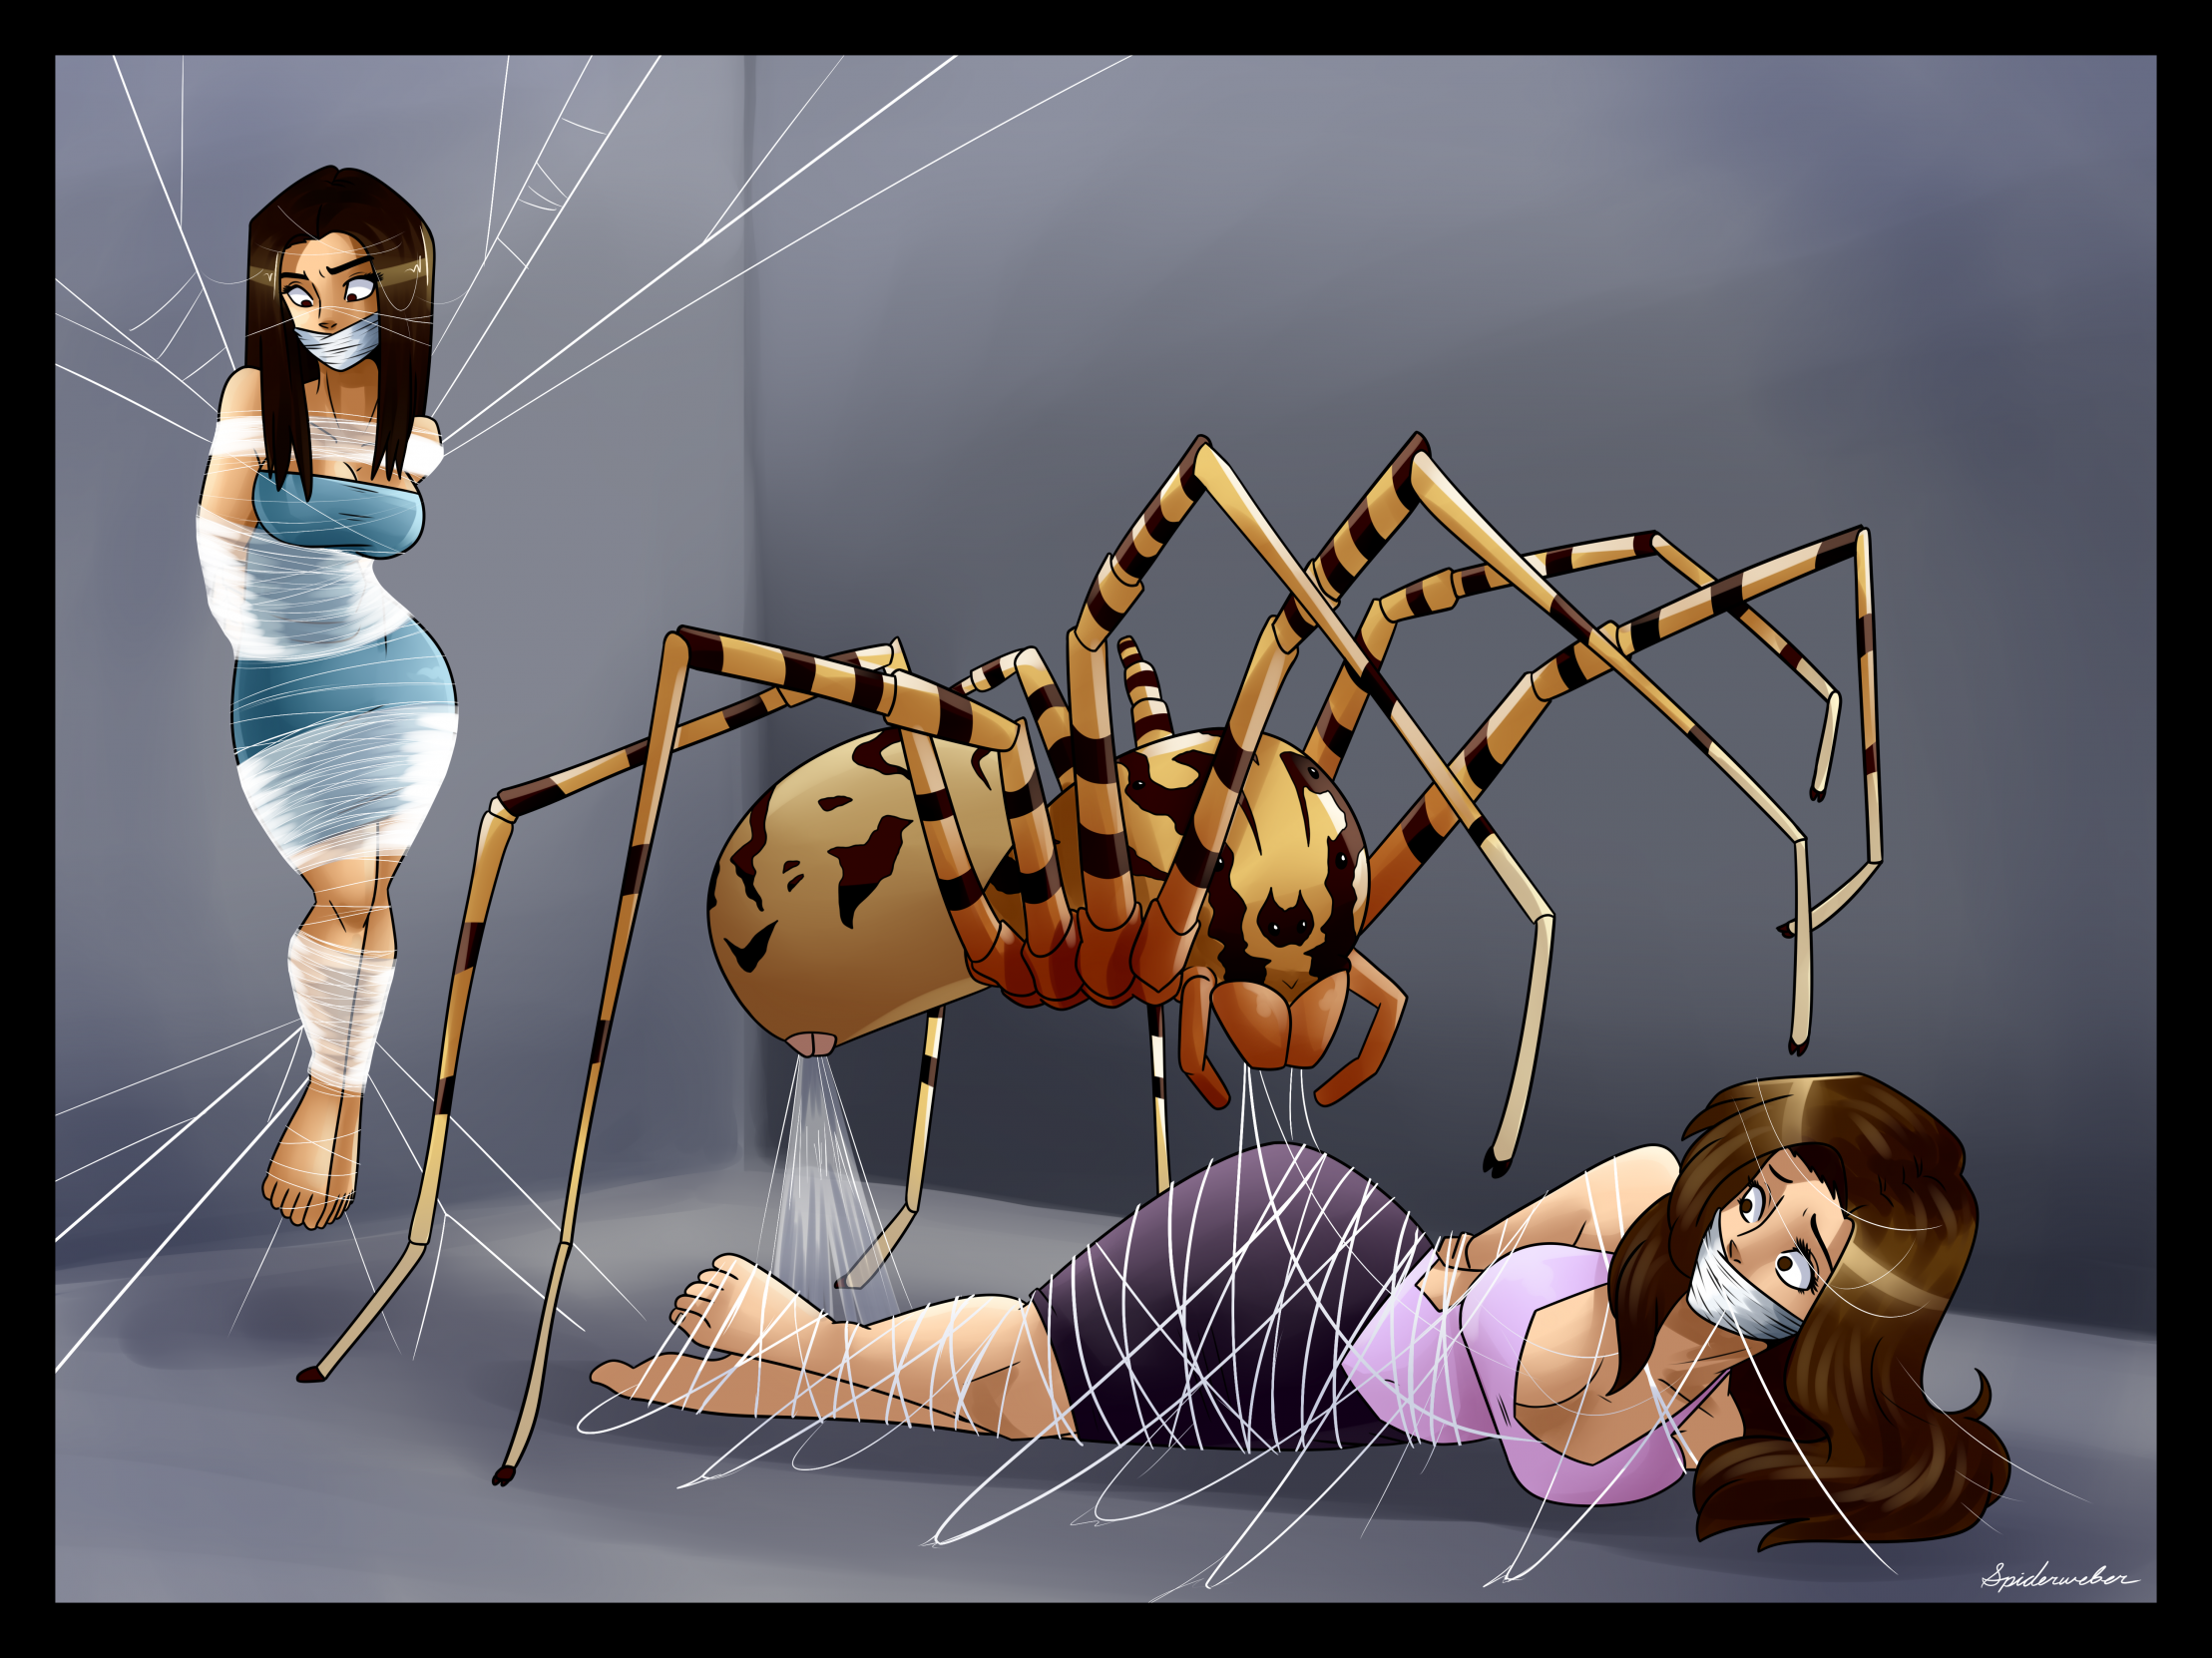 Spider web bondage